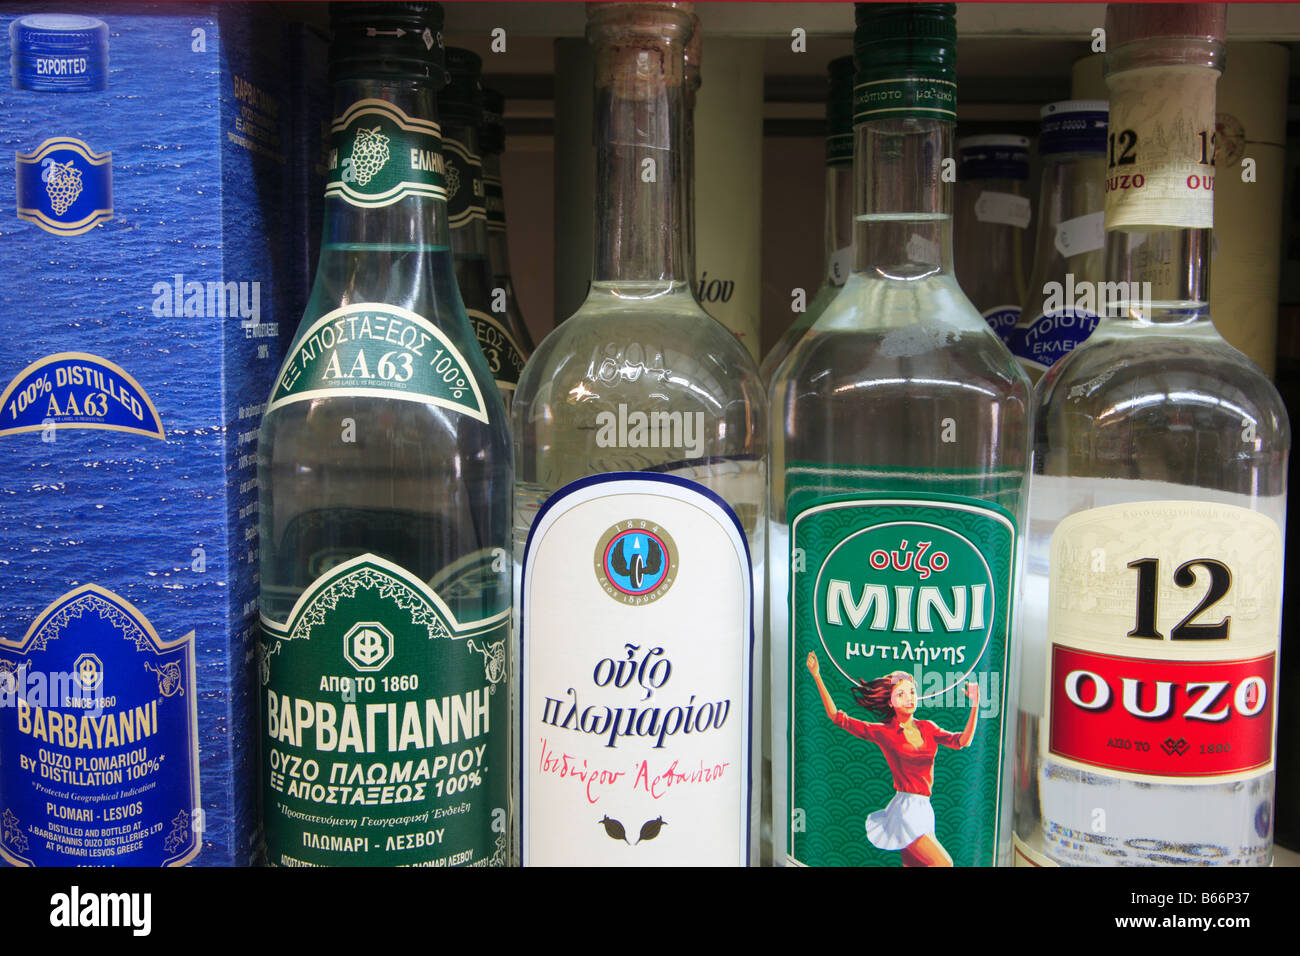 Iconic Greece Bottles of Ouzo Stock Photo - Alamy